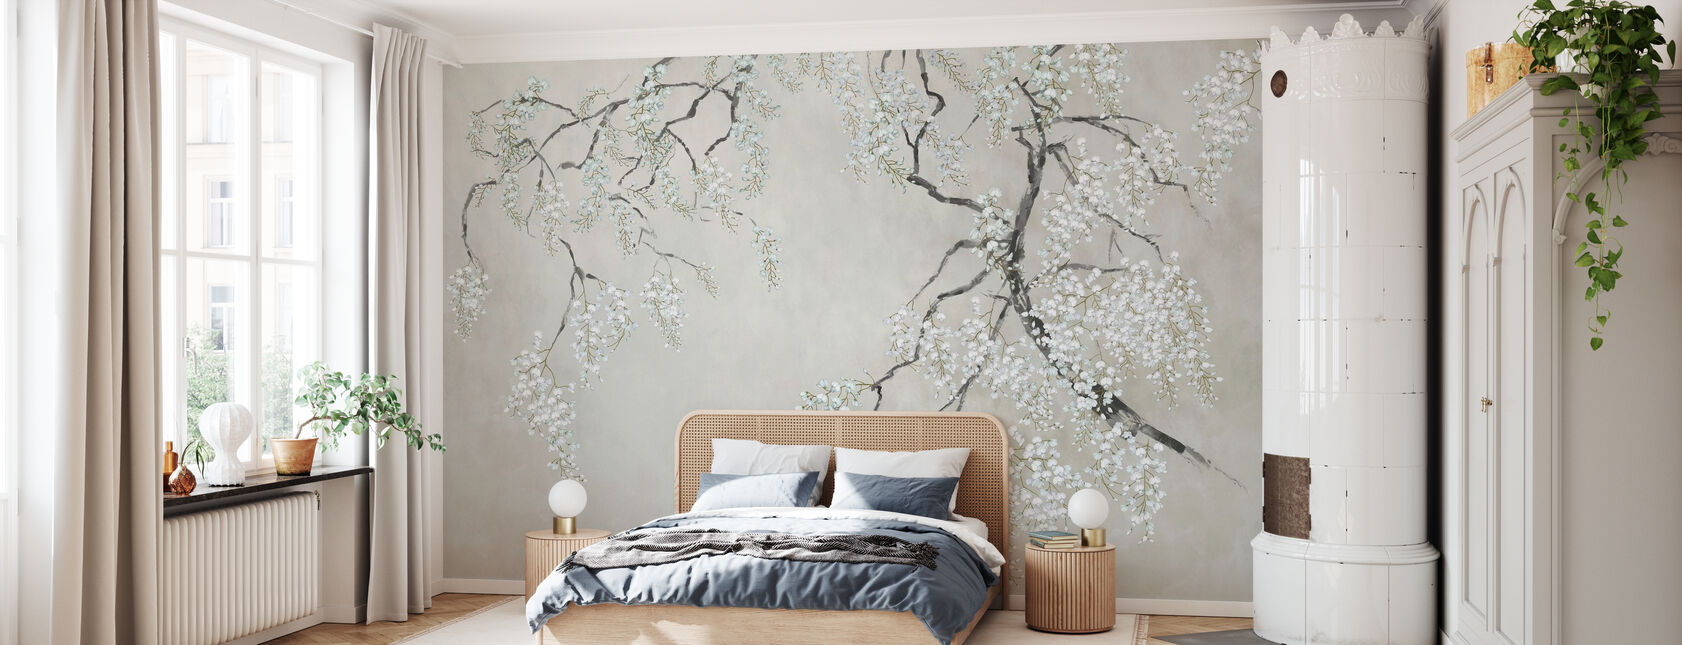 Blossom Wisteria - Wallpaper - Bedroom